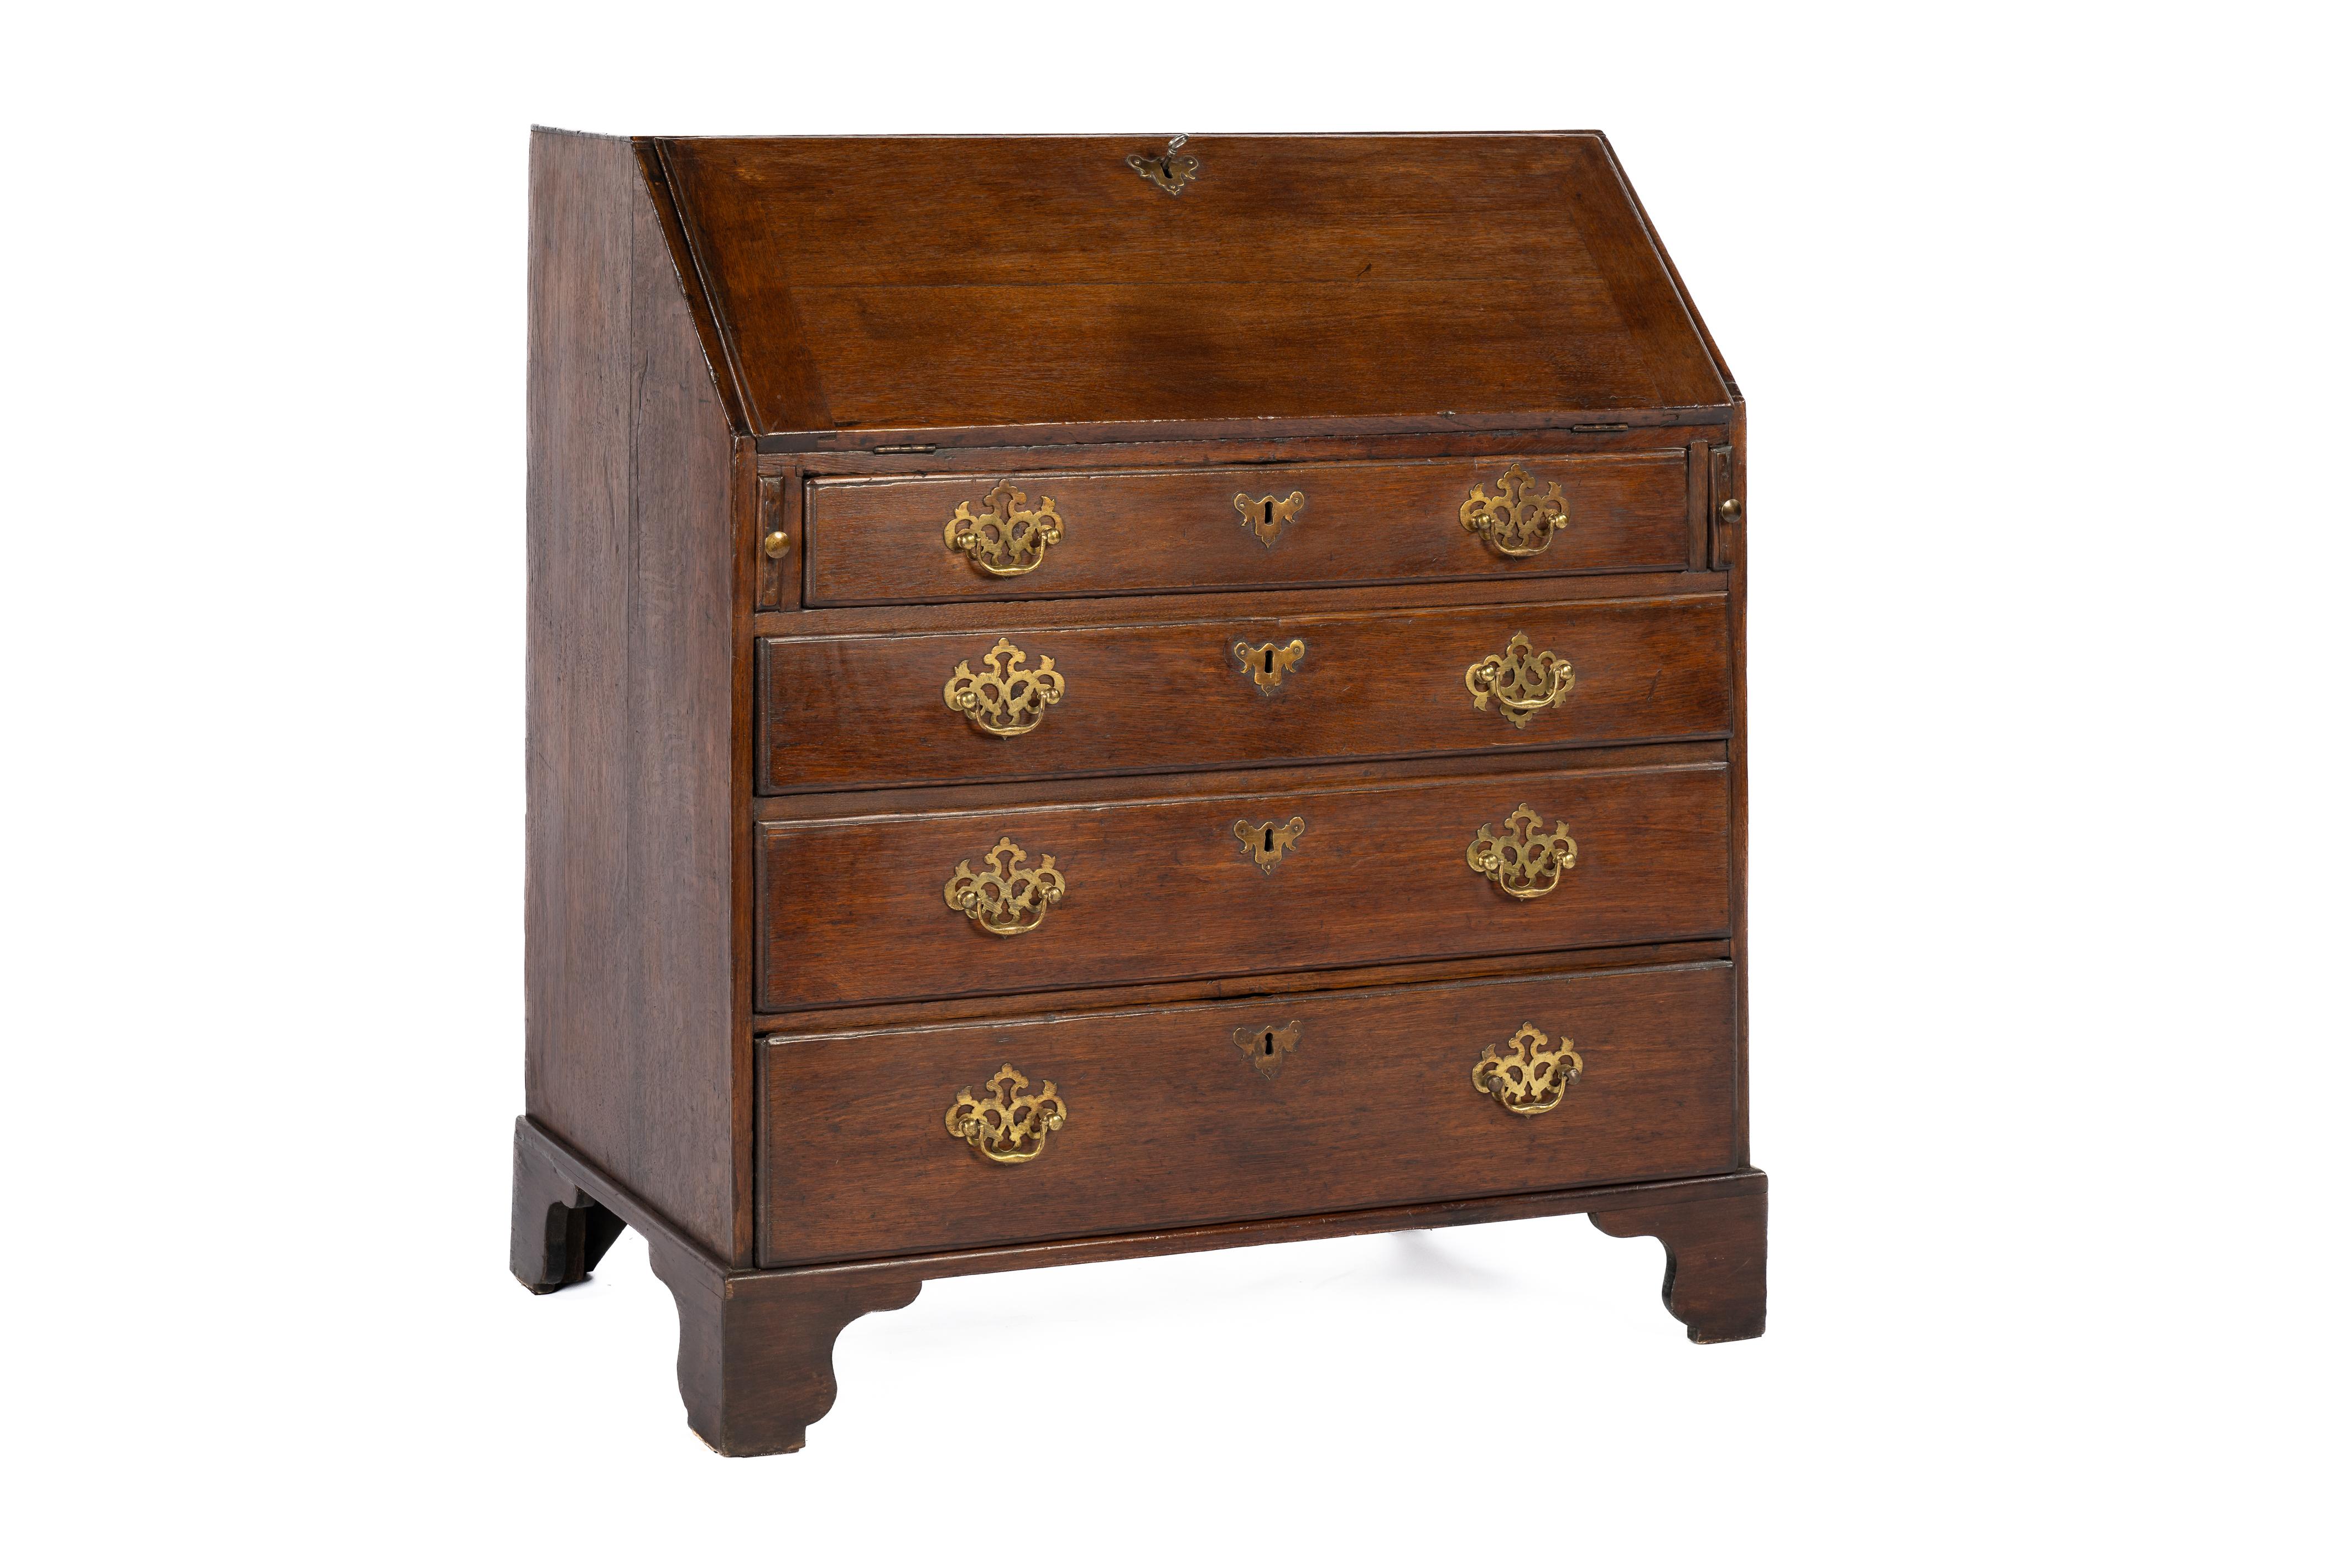 Hier wird ein wunderschöner Queen Anne-Schreibtisch mit schräger Front angeboten, der Ende des 18. Jahrhunderts in England hergestellt wurde. Er wurde komplett aus hochwertigem europäischem Eichenholz gefertigt, einschließlich der Innenseiten der